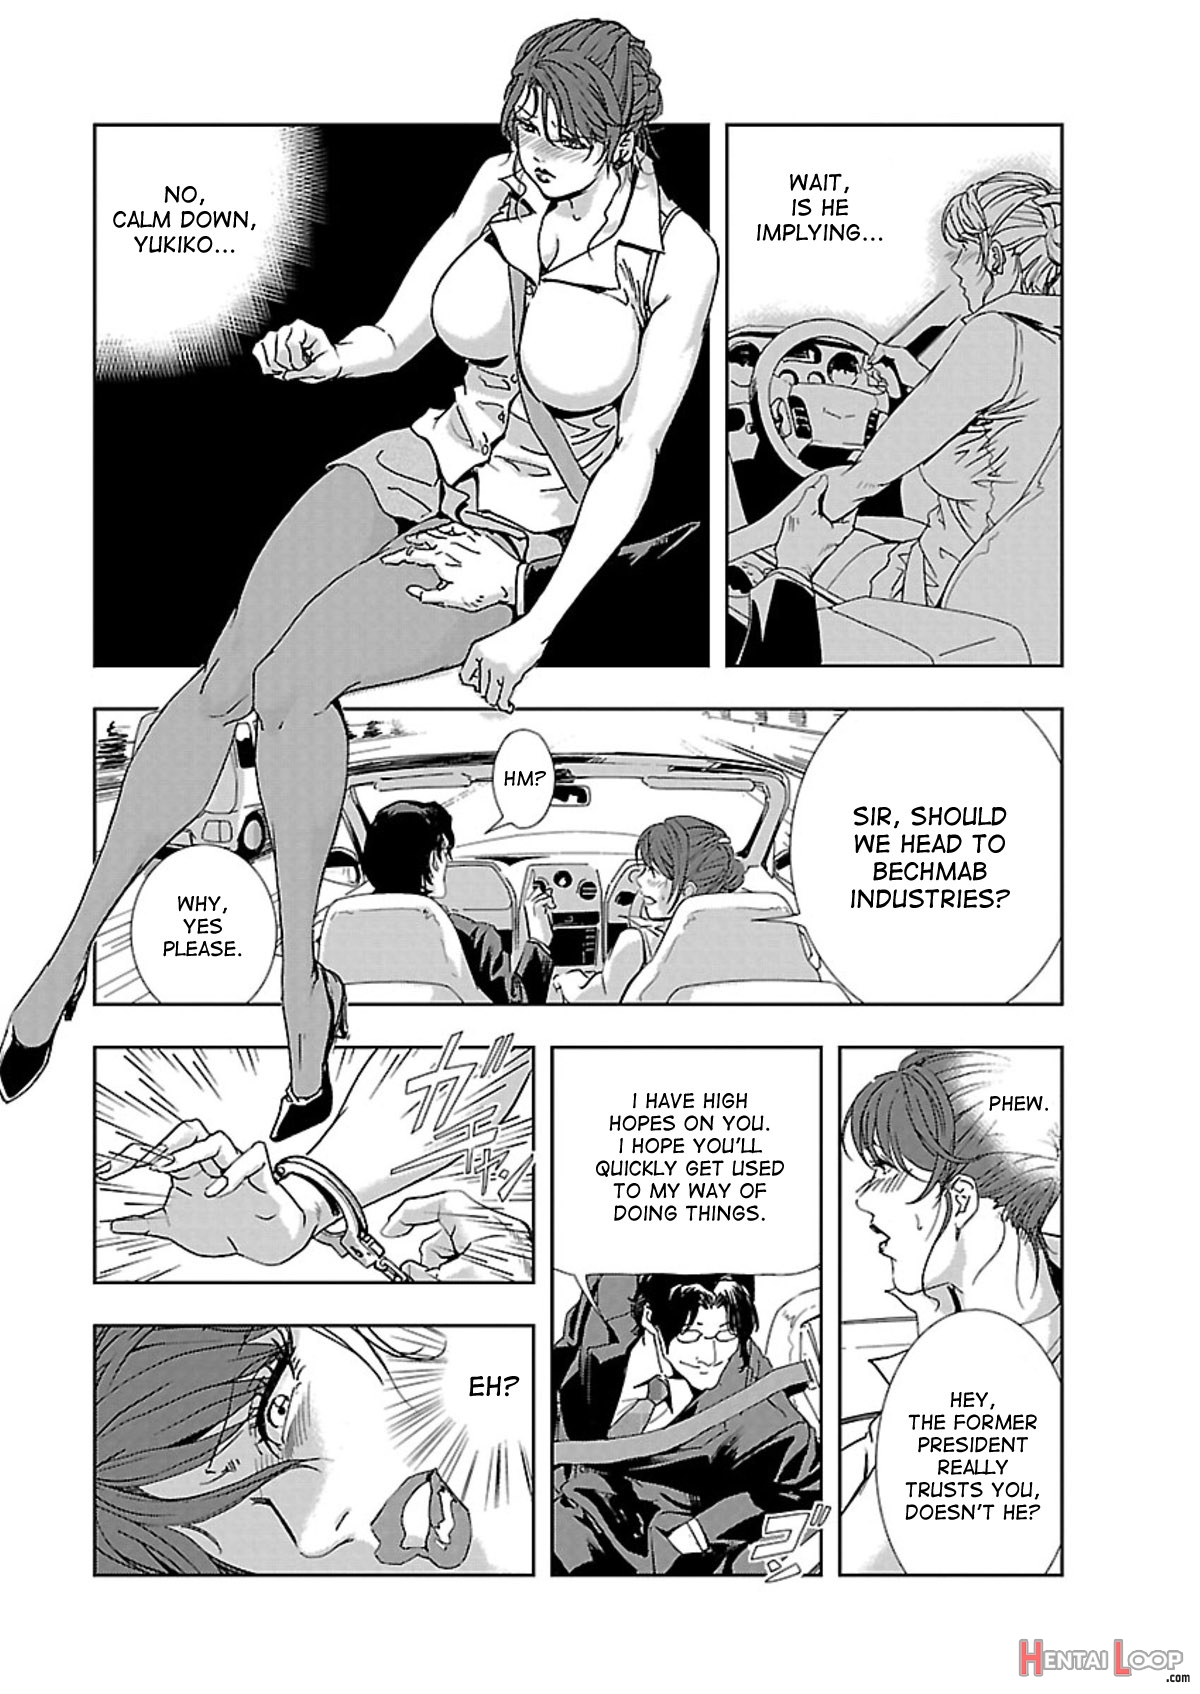 Nikuhisyo Yukiko Volume I Ch. 1-6 page 8